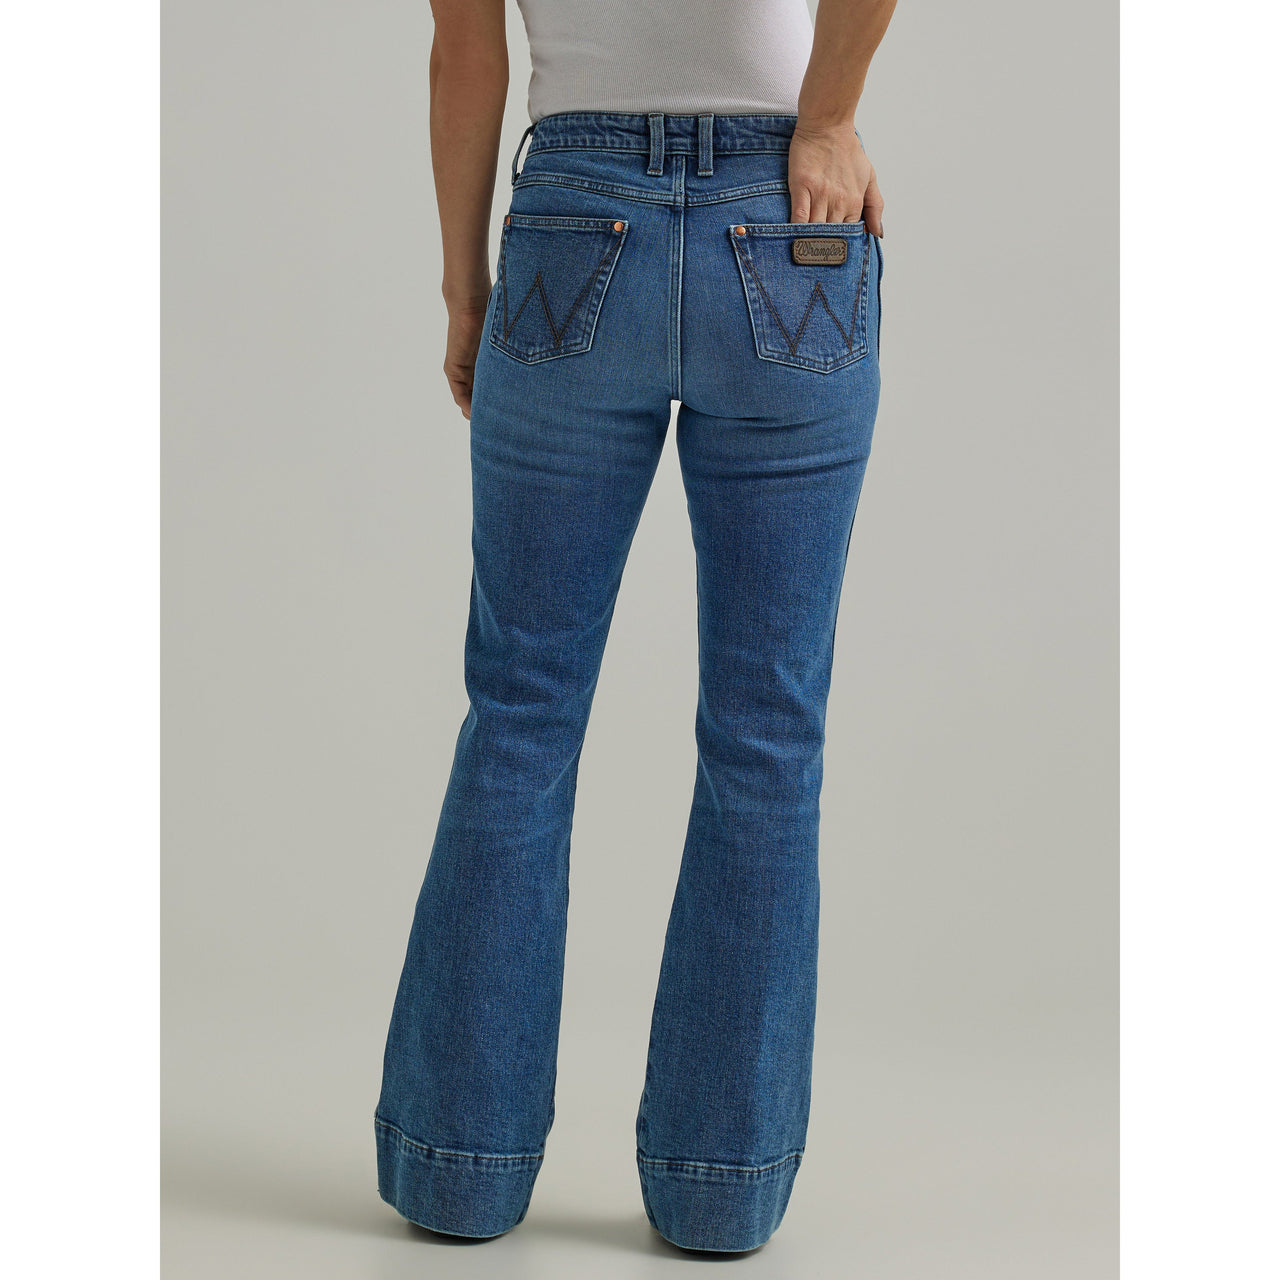 Wrangler Women's Retro Bailey High Rise Trouser Jeans - Bessi